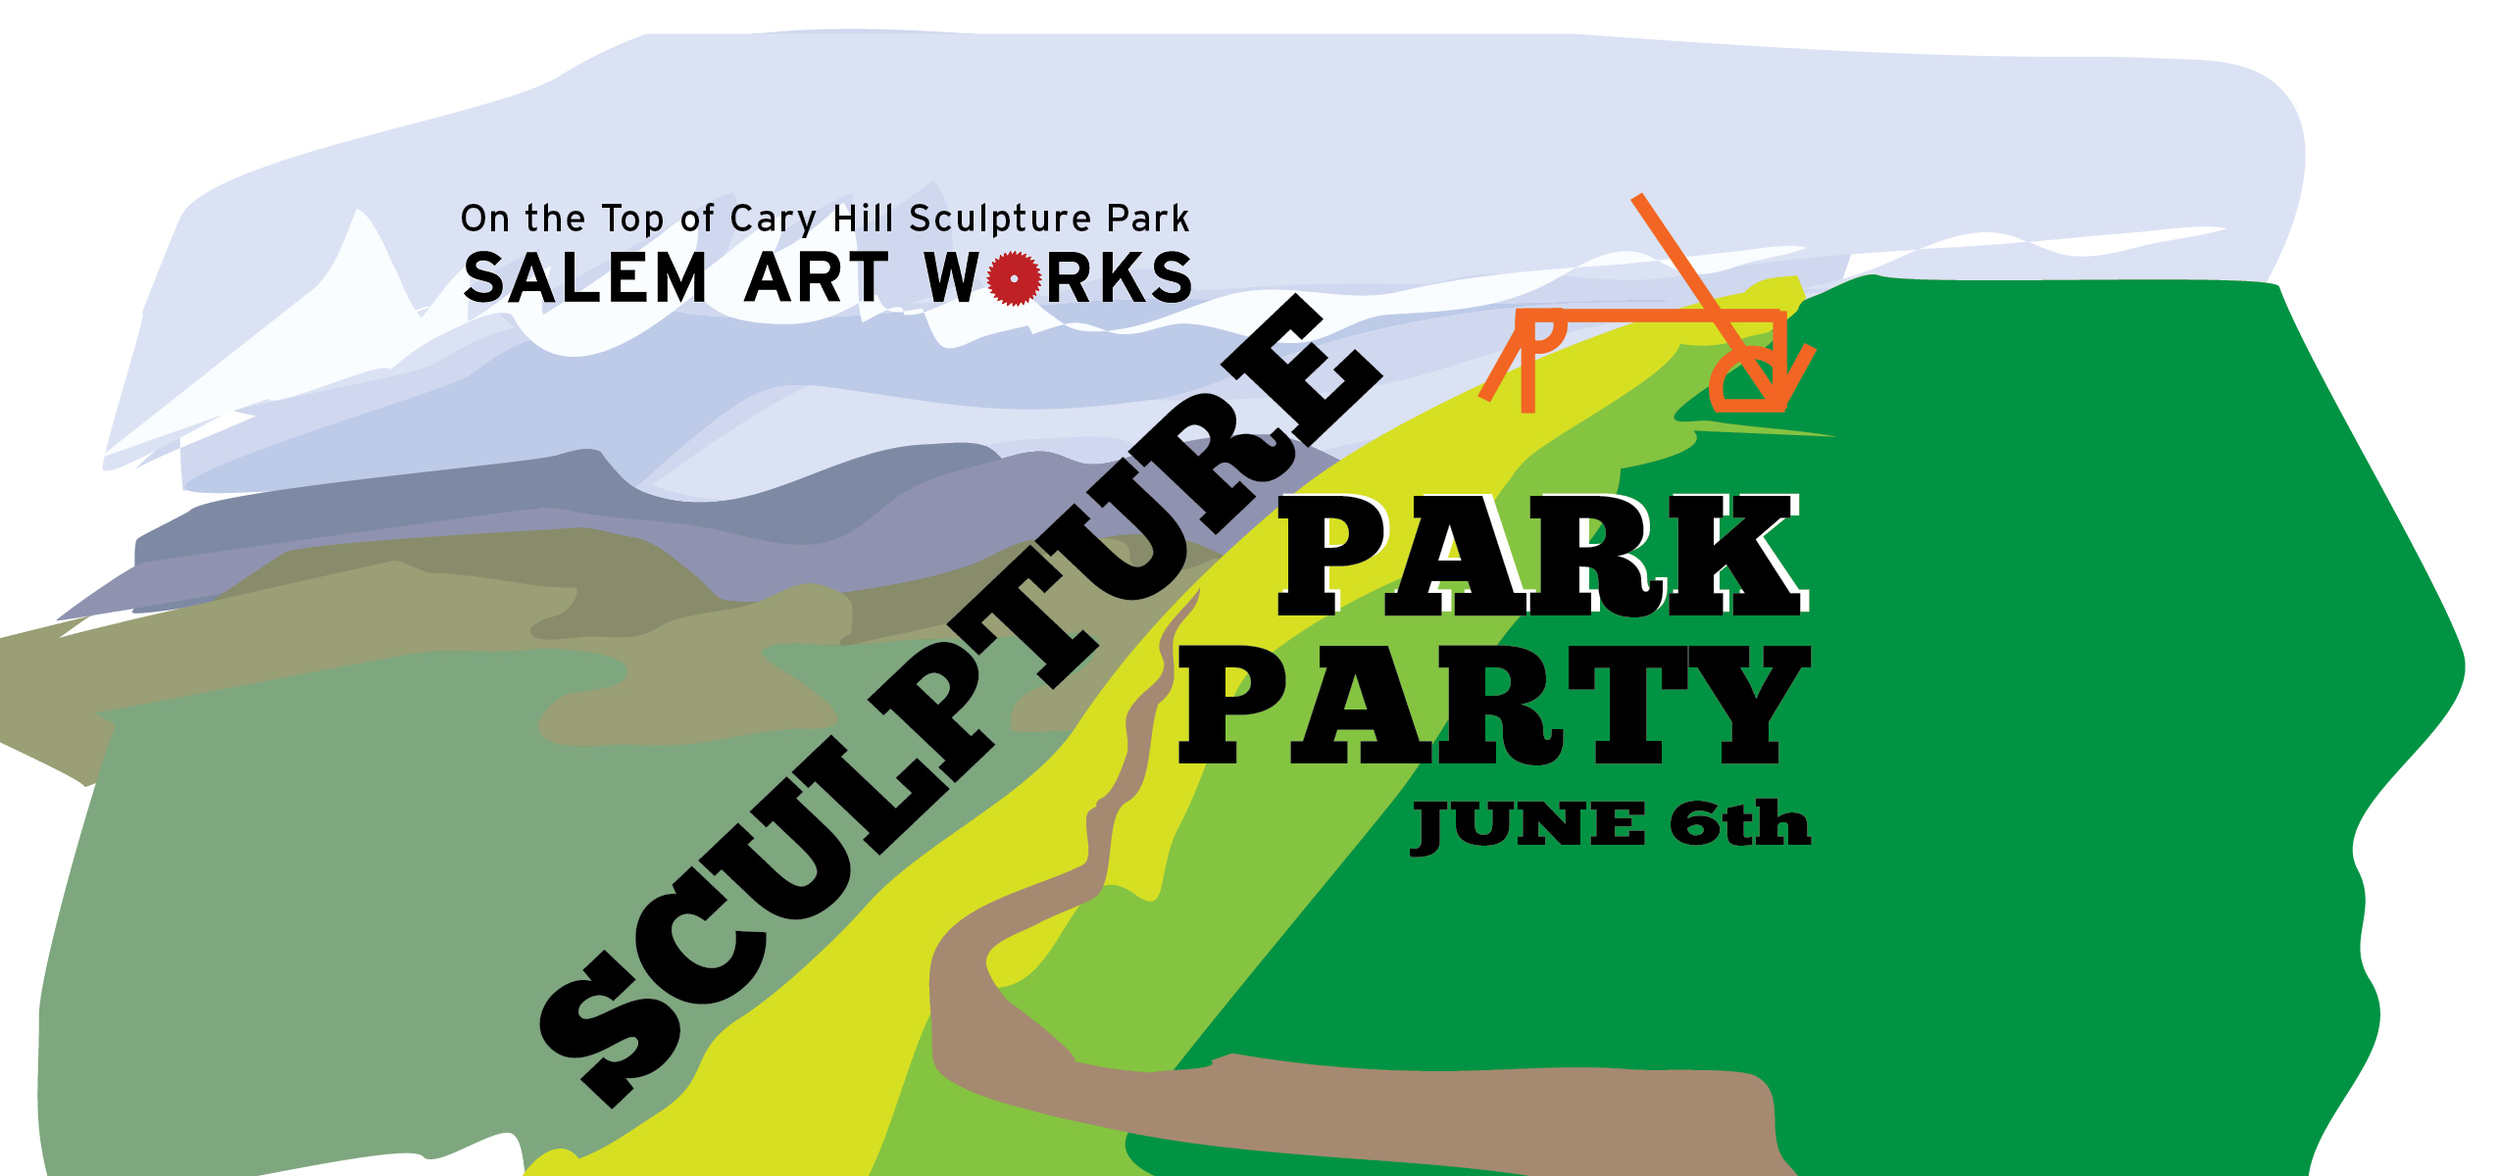 Sculpture Park Party at Salem Art Works